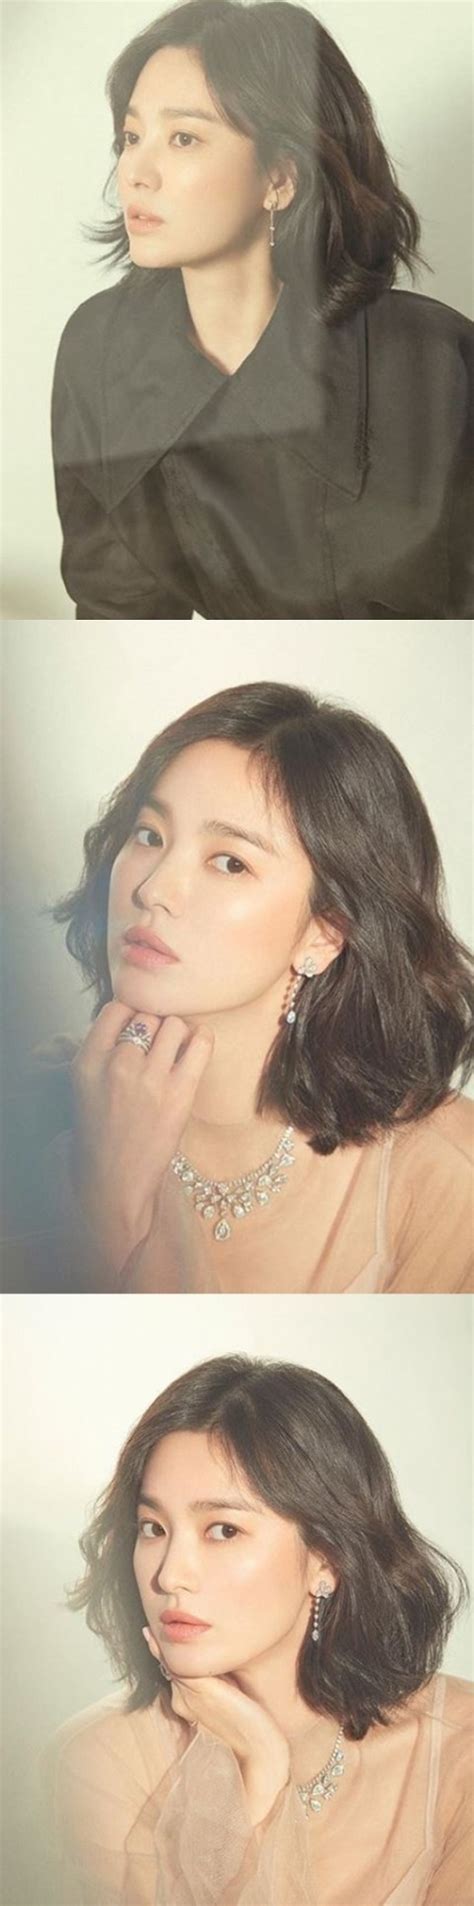 ソン・ヘギョ、魅力的な美しさあふれる美貌を披露 韓流ニュース 韓流大好き